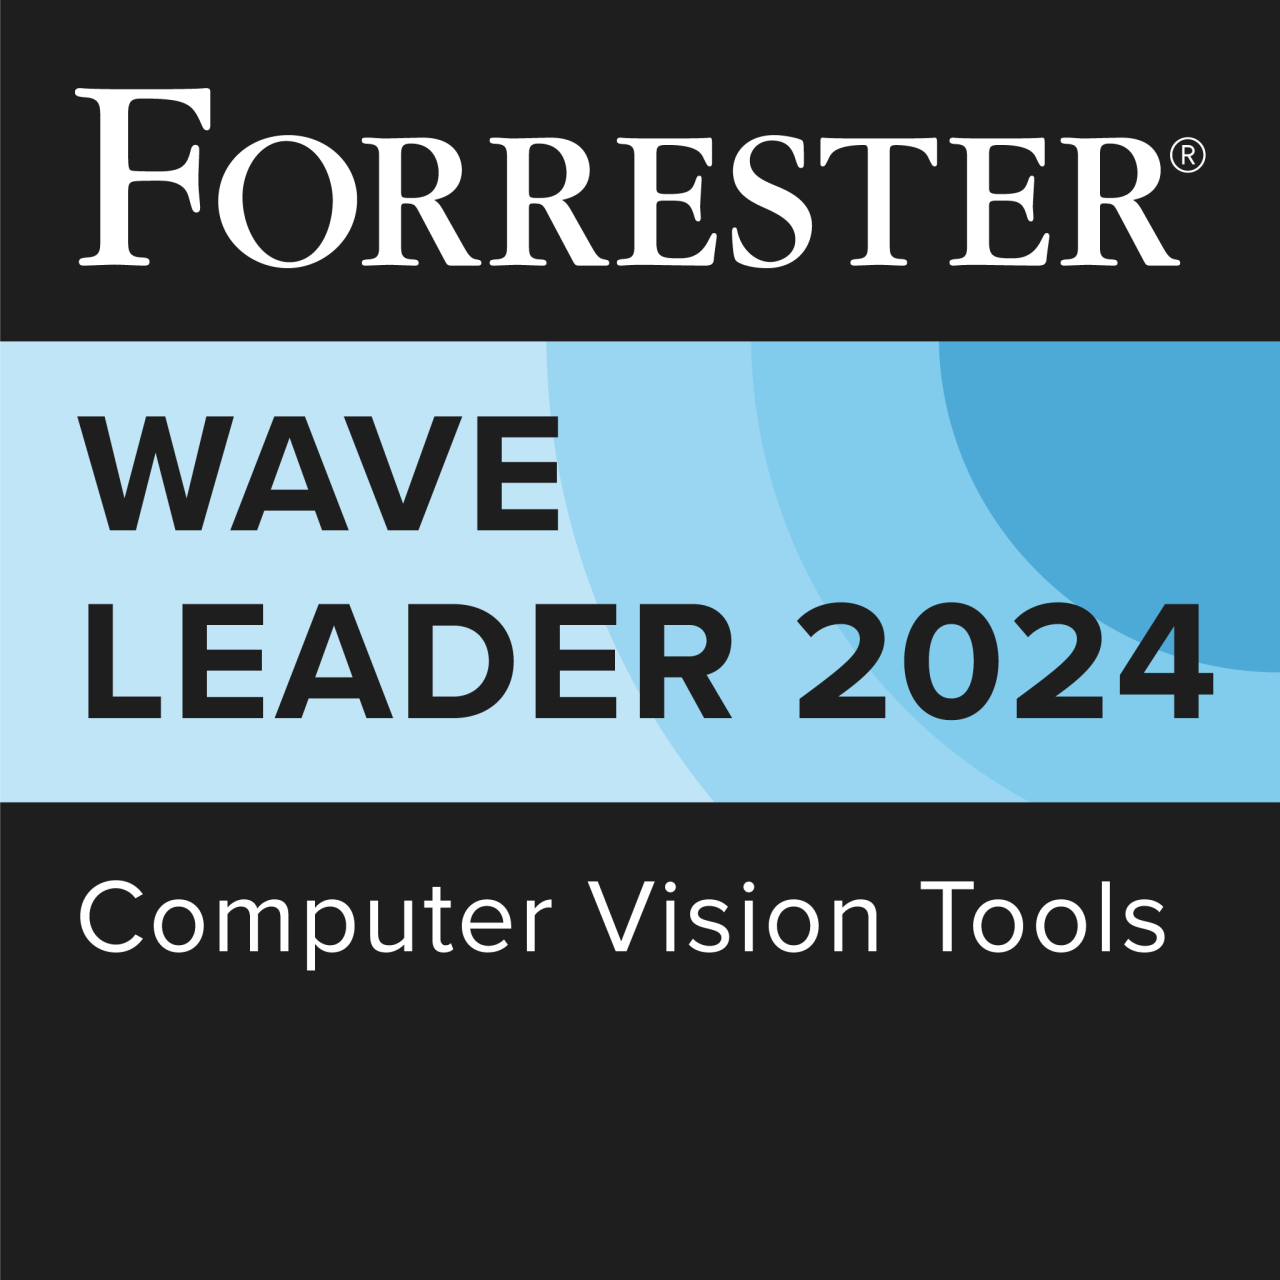 Forrester wave leader 2024 computer vision tools